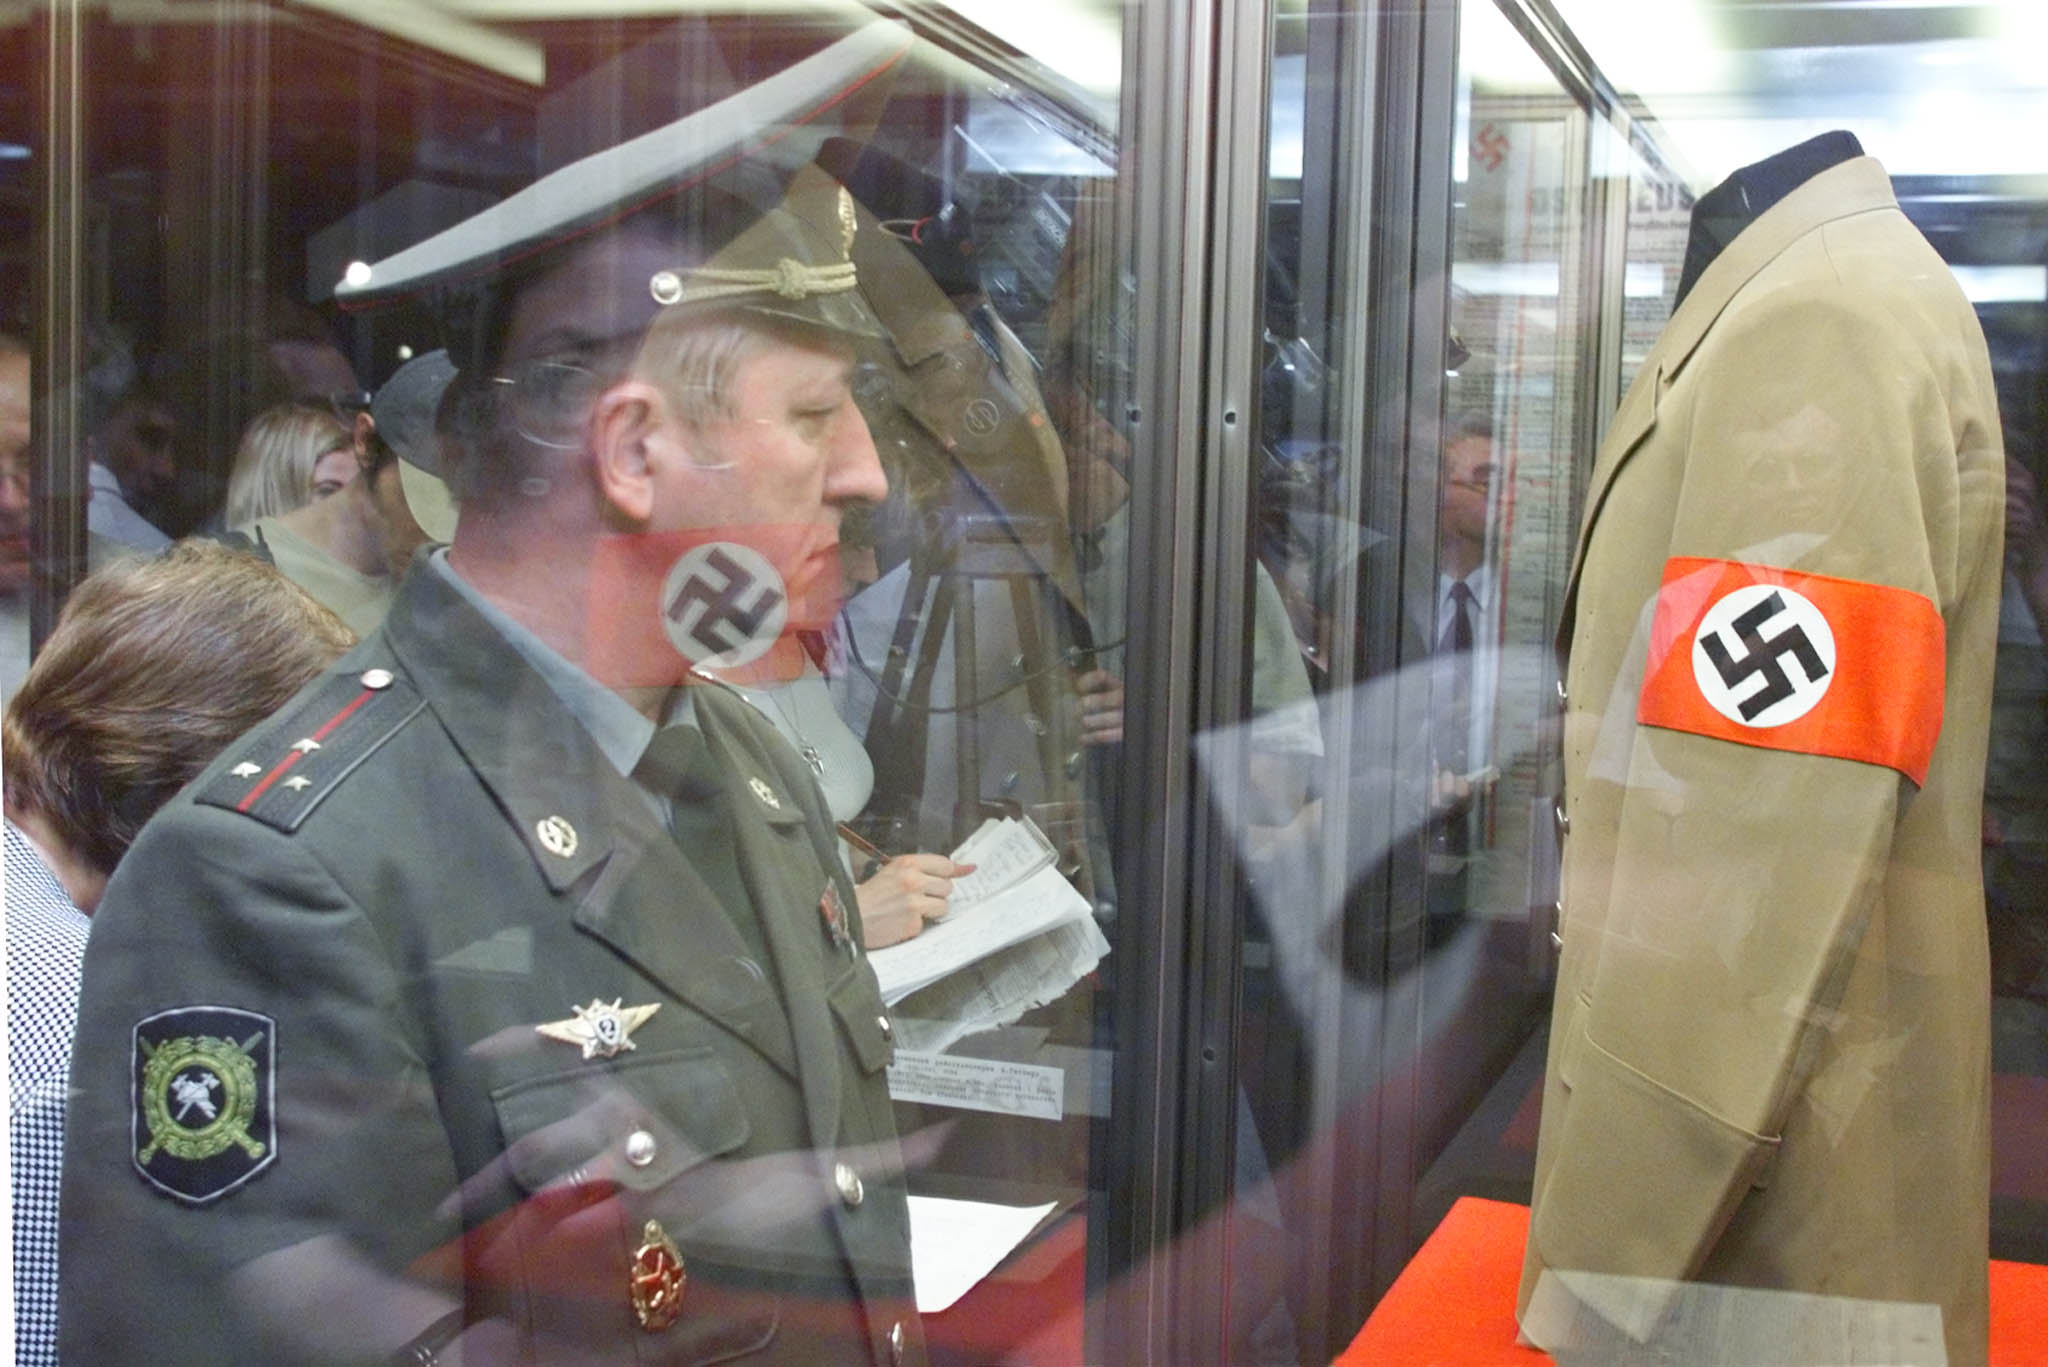 Officeren ska ha sagt "i försvarsmakten bär vi armbindeln på vänsterarm, för det hade nazisterna". Bilden: Rysk soldat iakttar Adolf Hitlers uniform under en utställning i Moskva.